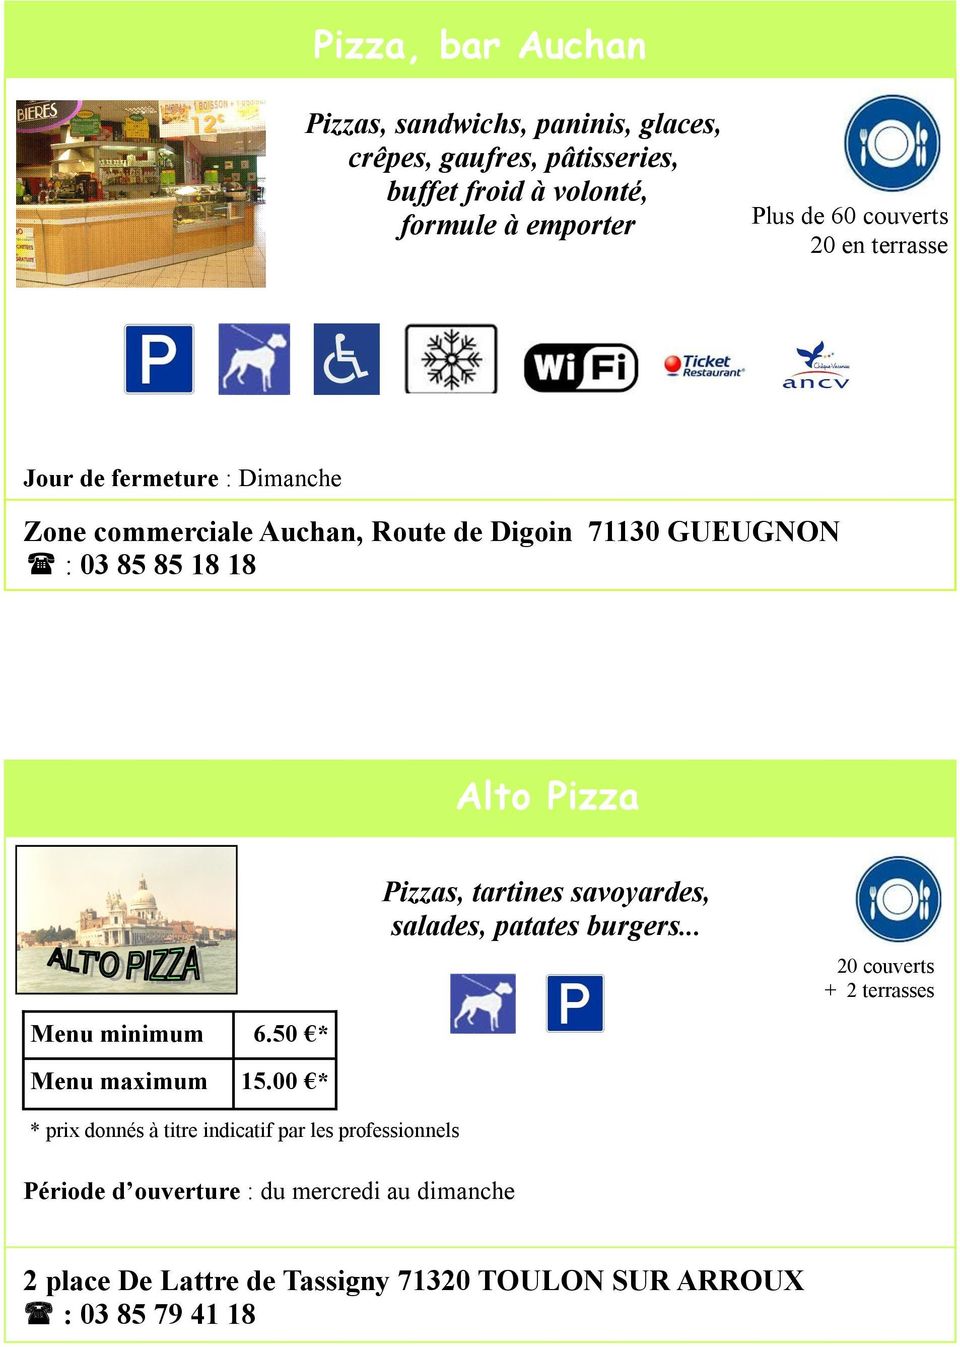 85 18 18 Alto Pizza Menu minimum 6.50 * Menu maximum 15.00 * Pizzas, tartines savoyardes, salades, patates burgers.